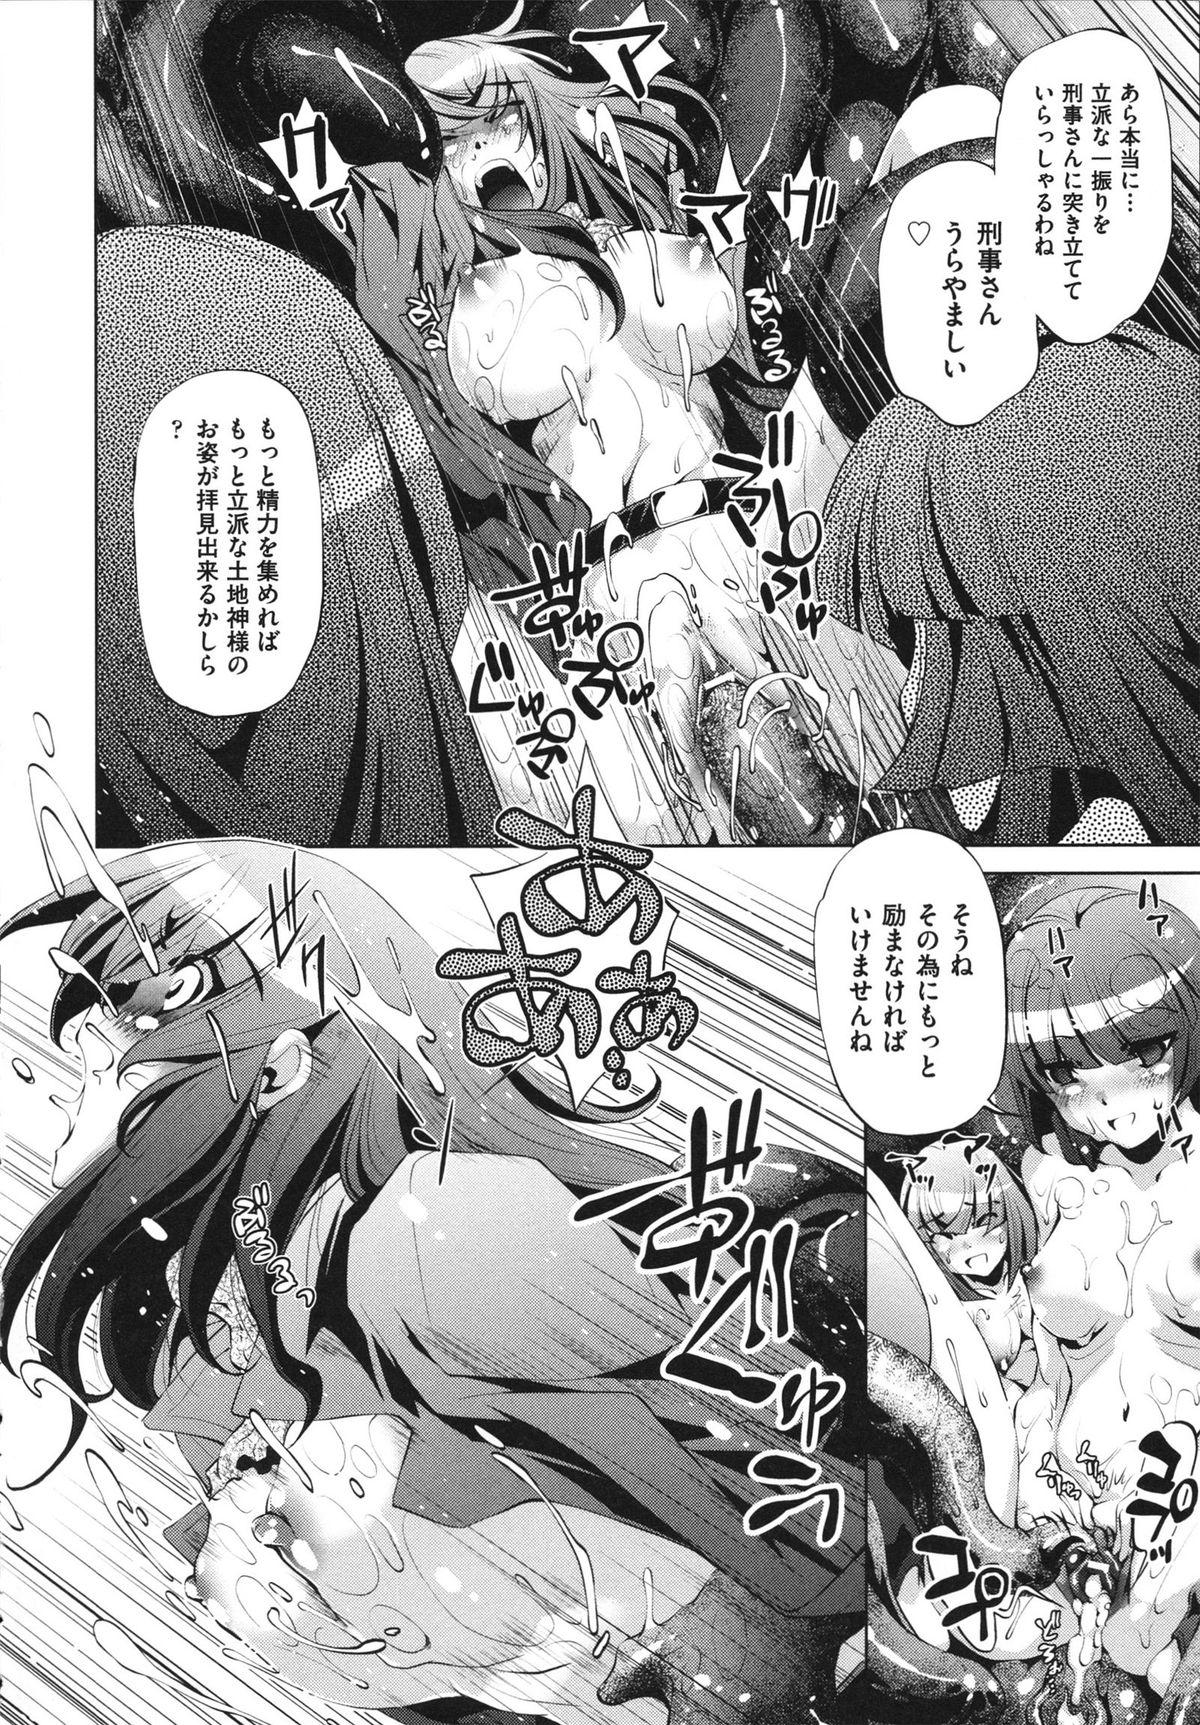 [Ootori Ryuuji] Shokushu wa Yawarakana Chibusa ni Makitsuki Onna-tachi no Ana wo Kakimidasu - Feeler coils around a soft breast and violates women's hole. 115